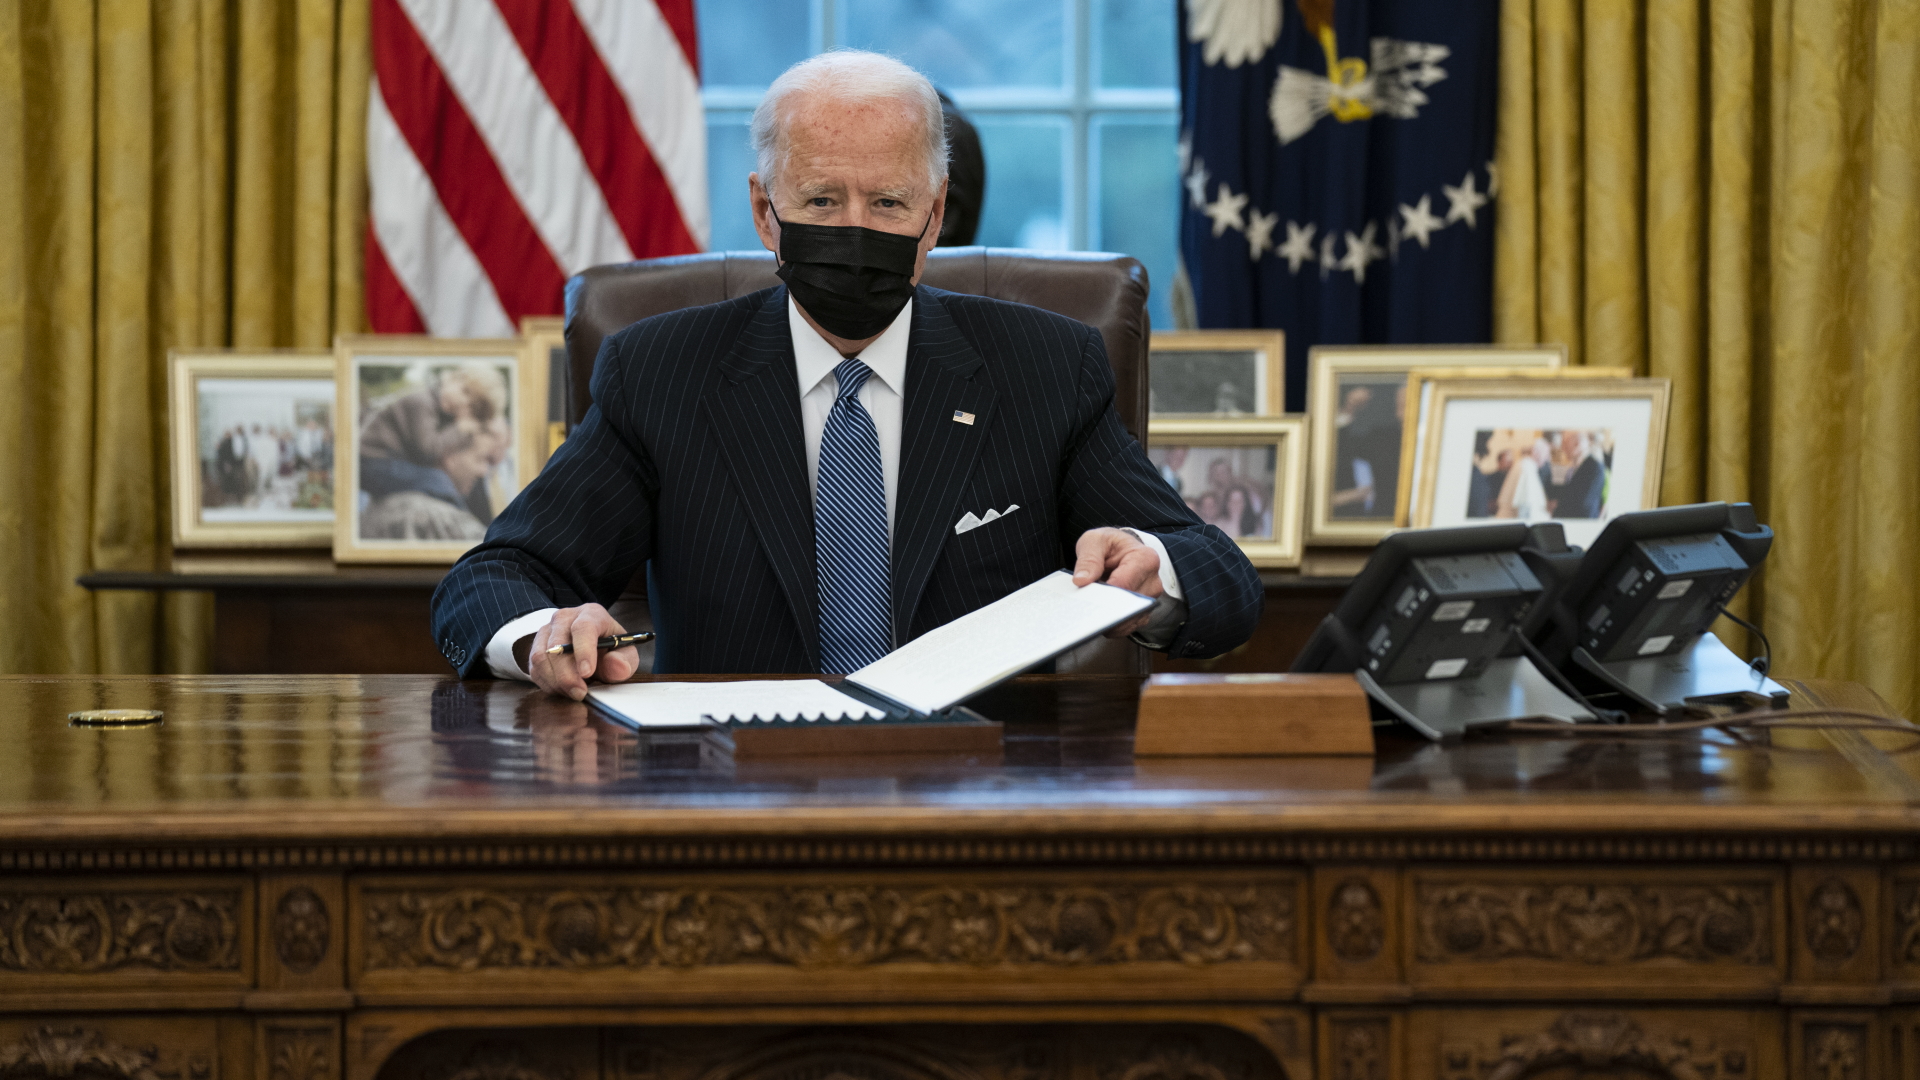  Joe Biden, Präsident der USA, blickt im Oval Office des Weißen Hauses auf, nachdem er eine kontroverse Anordnung seines Vorgängers Donald Trump zum Ausschluss von Transgender aus den Streitkräften aufgehoben ha | dpa